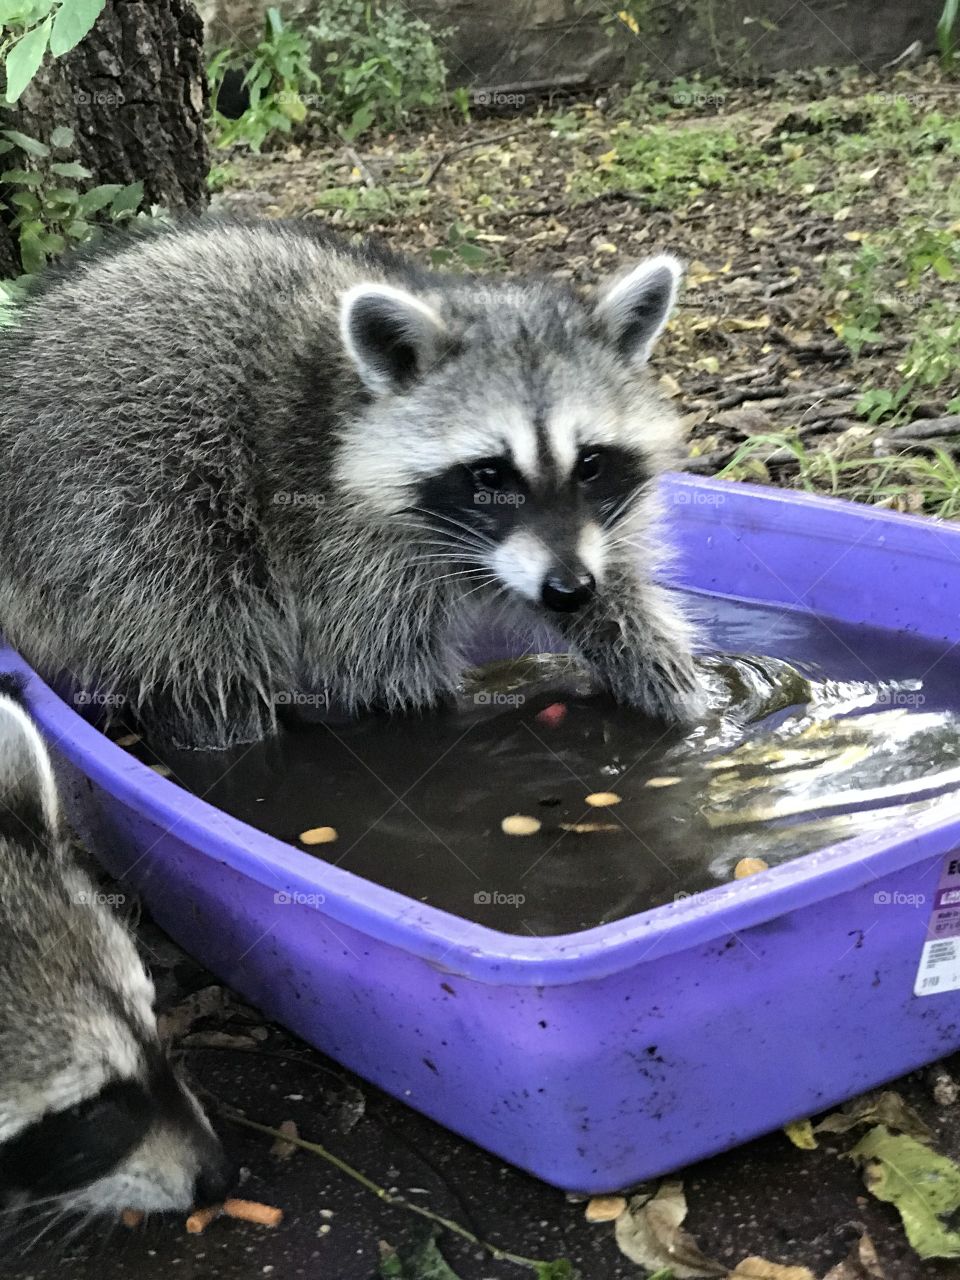 Raccoon in water dish 